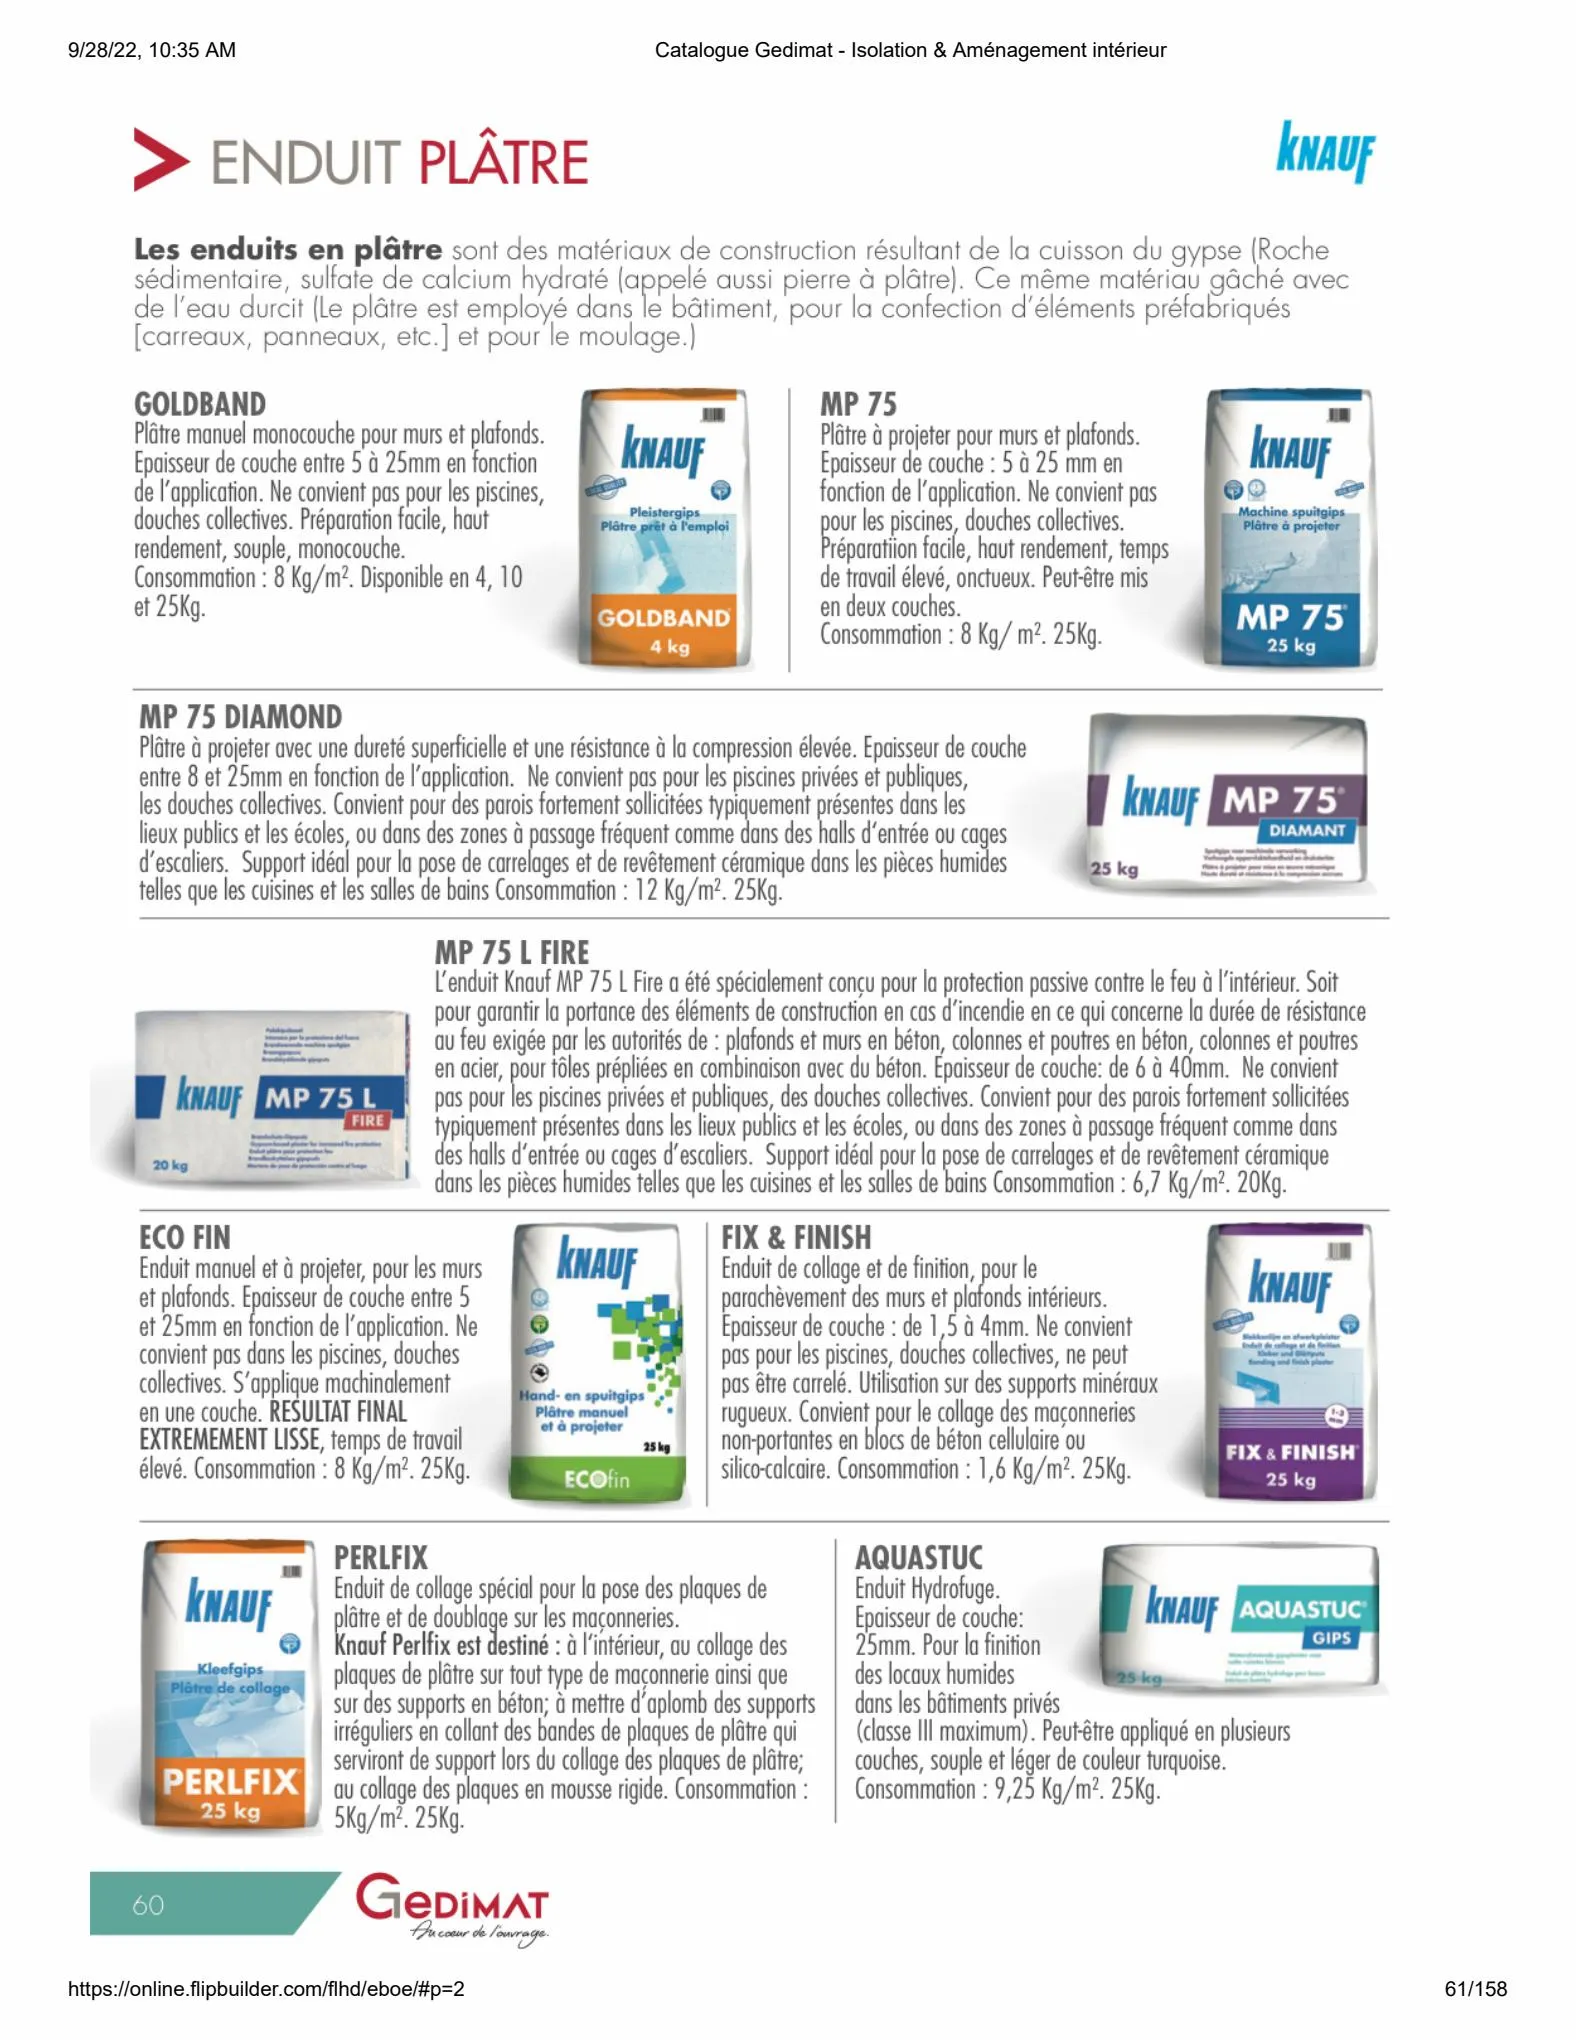 Catalogue Catalogue Gedimat - Isolation & Aménagement intérieur, page 00060